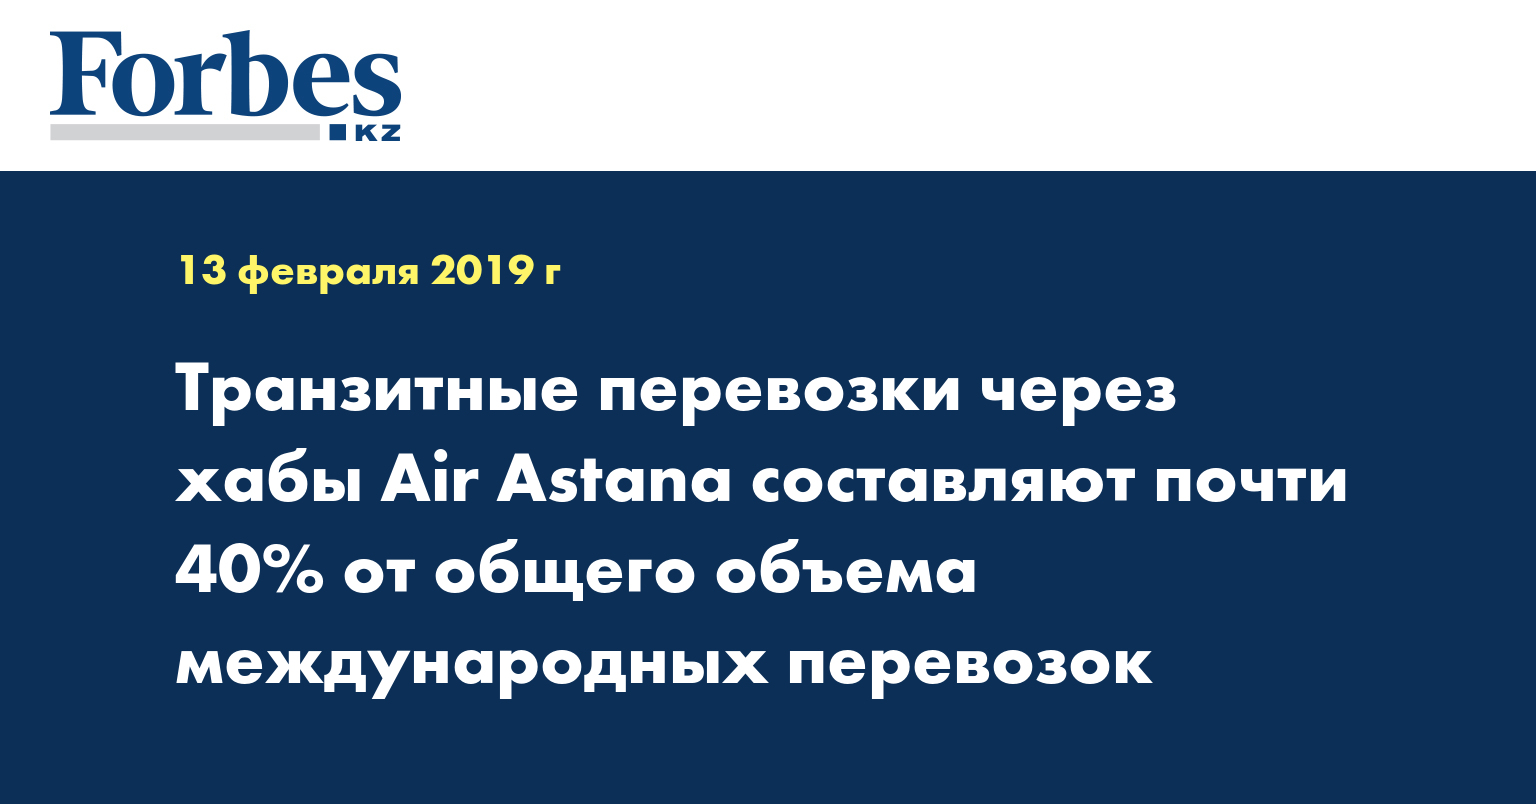 Транзитные перевозки через хабы Air Astana составляют почти 40% от общего объема международных перевозок